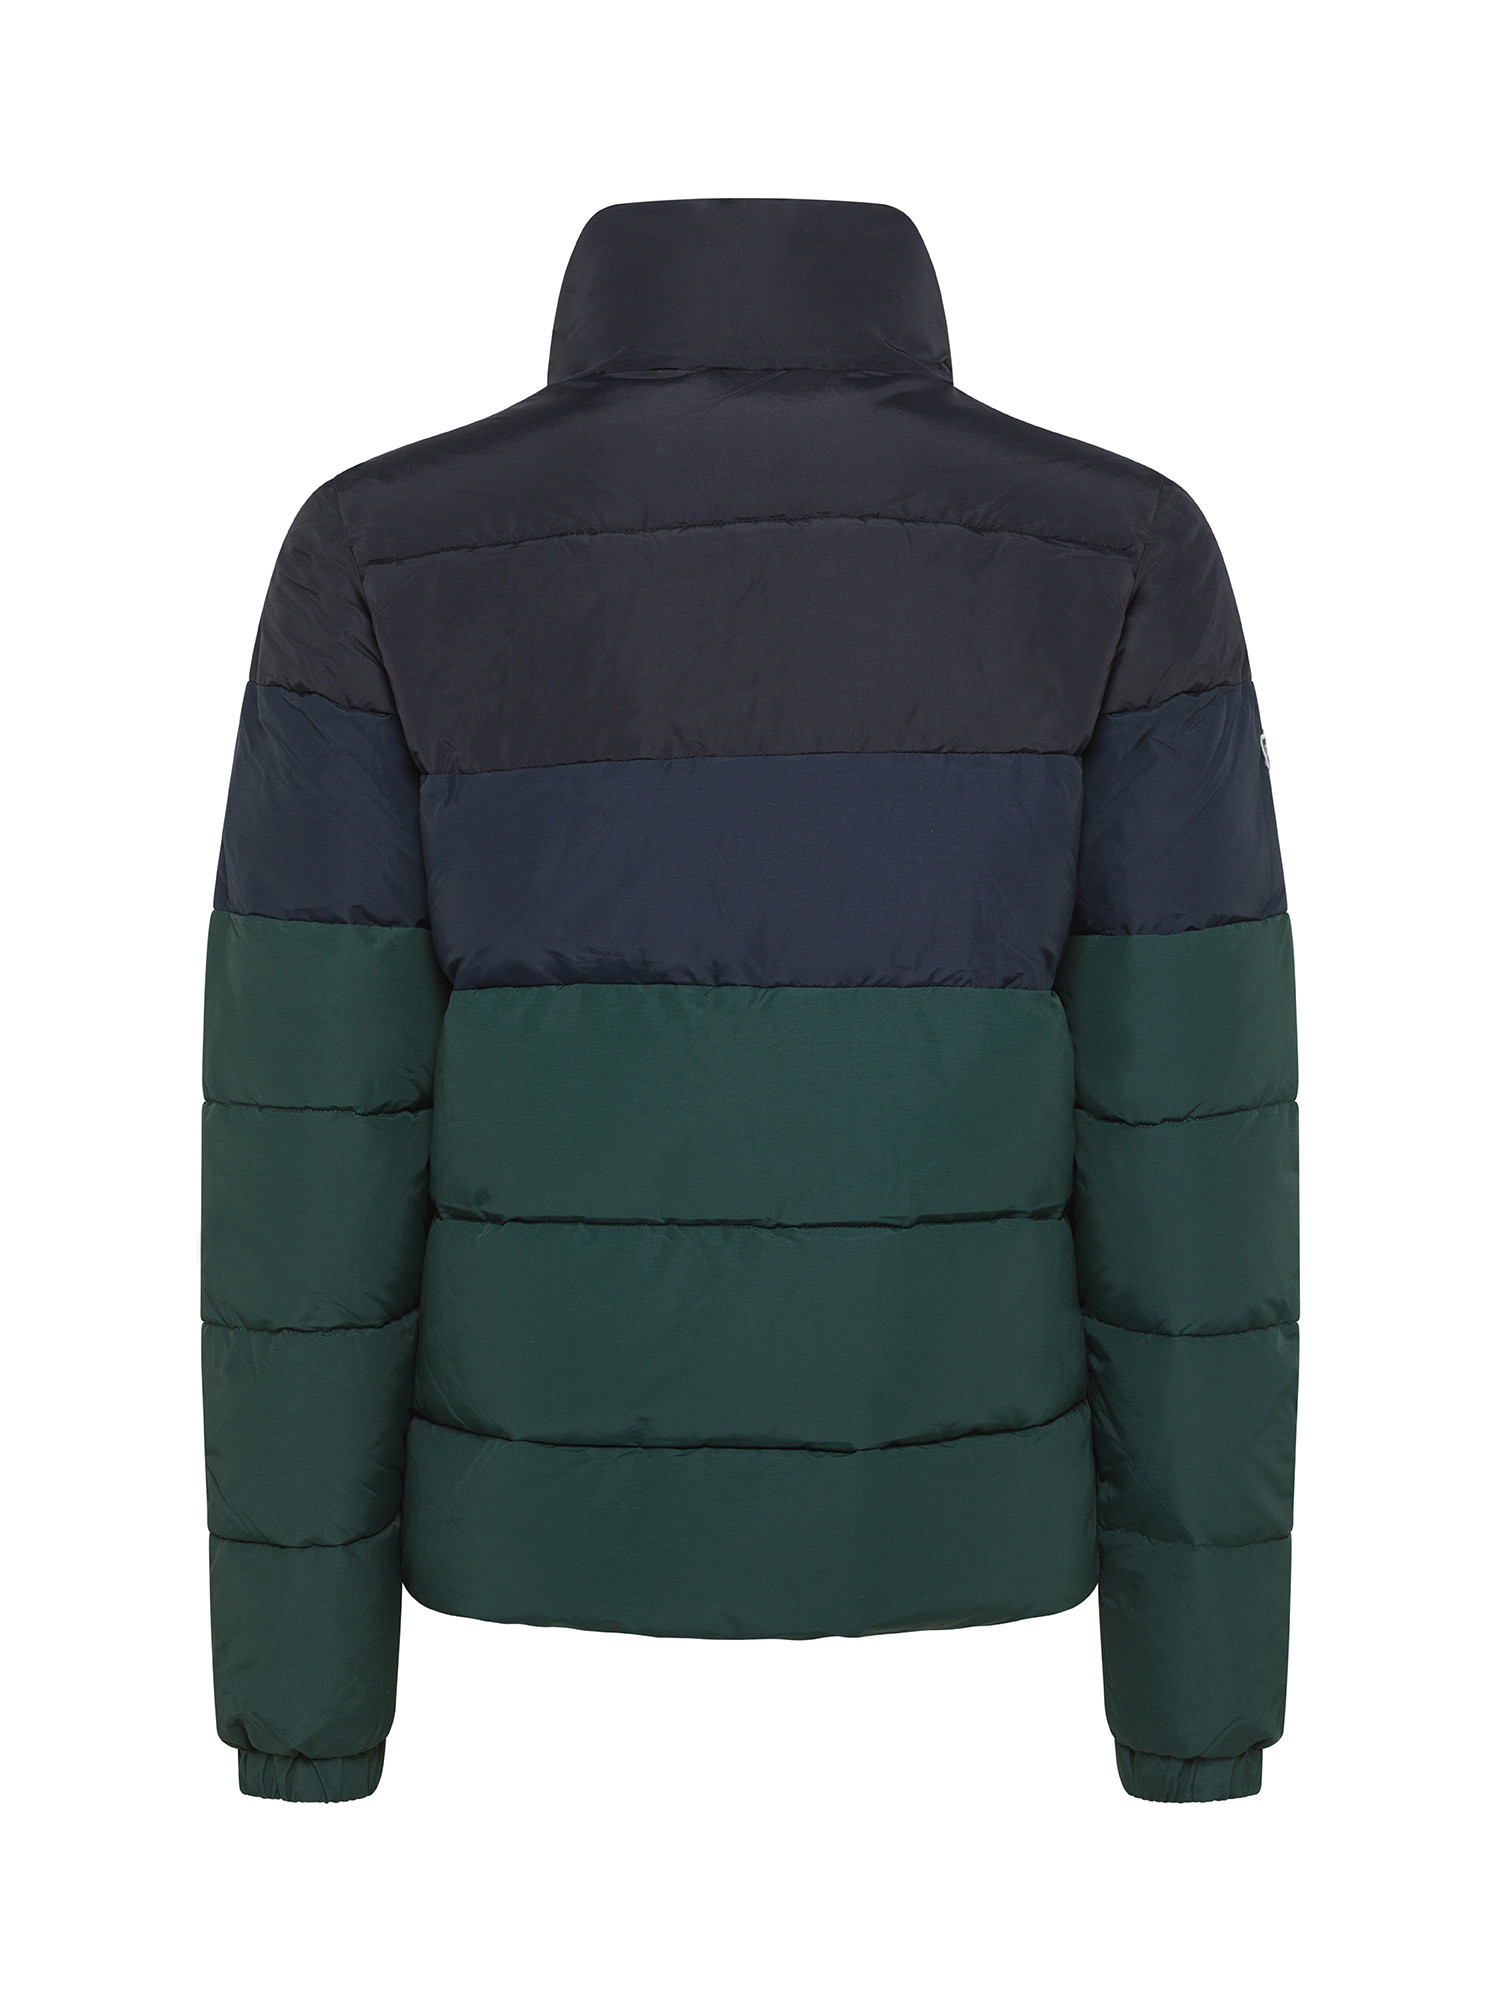 Superdry - Color block down jacket, Black, large image number 1